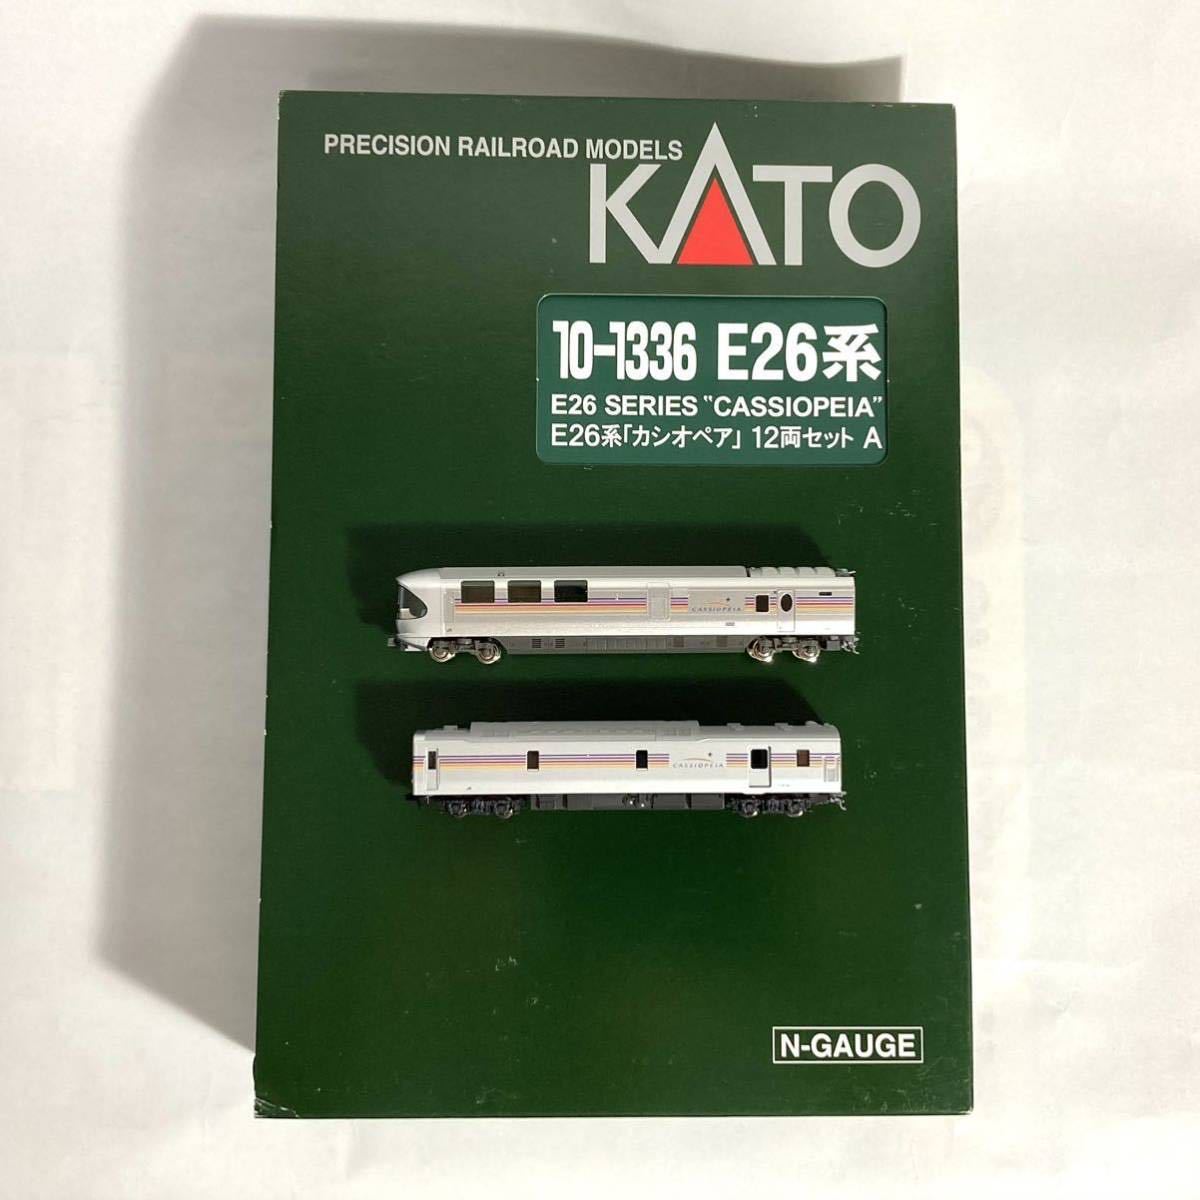 KATO 10-1336 E26系 カシオペア 12両セット +おまけ2両